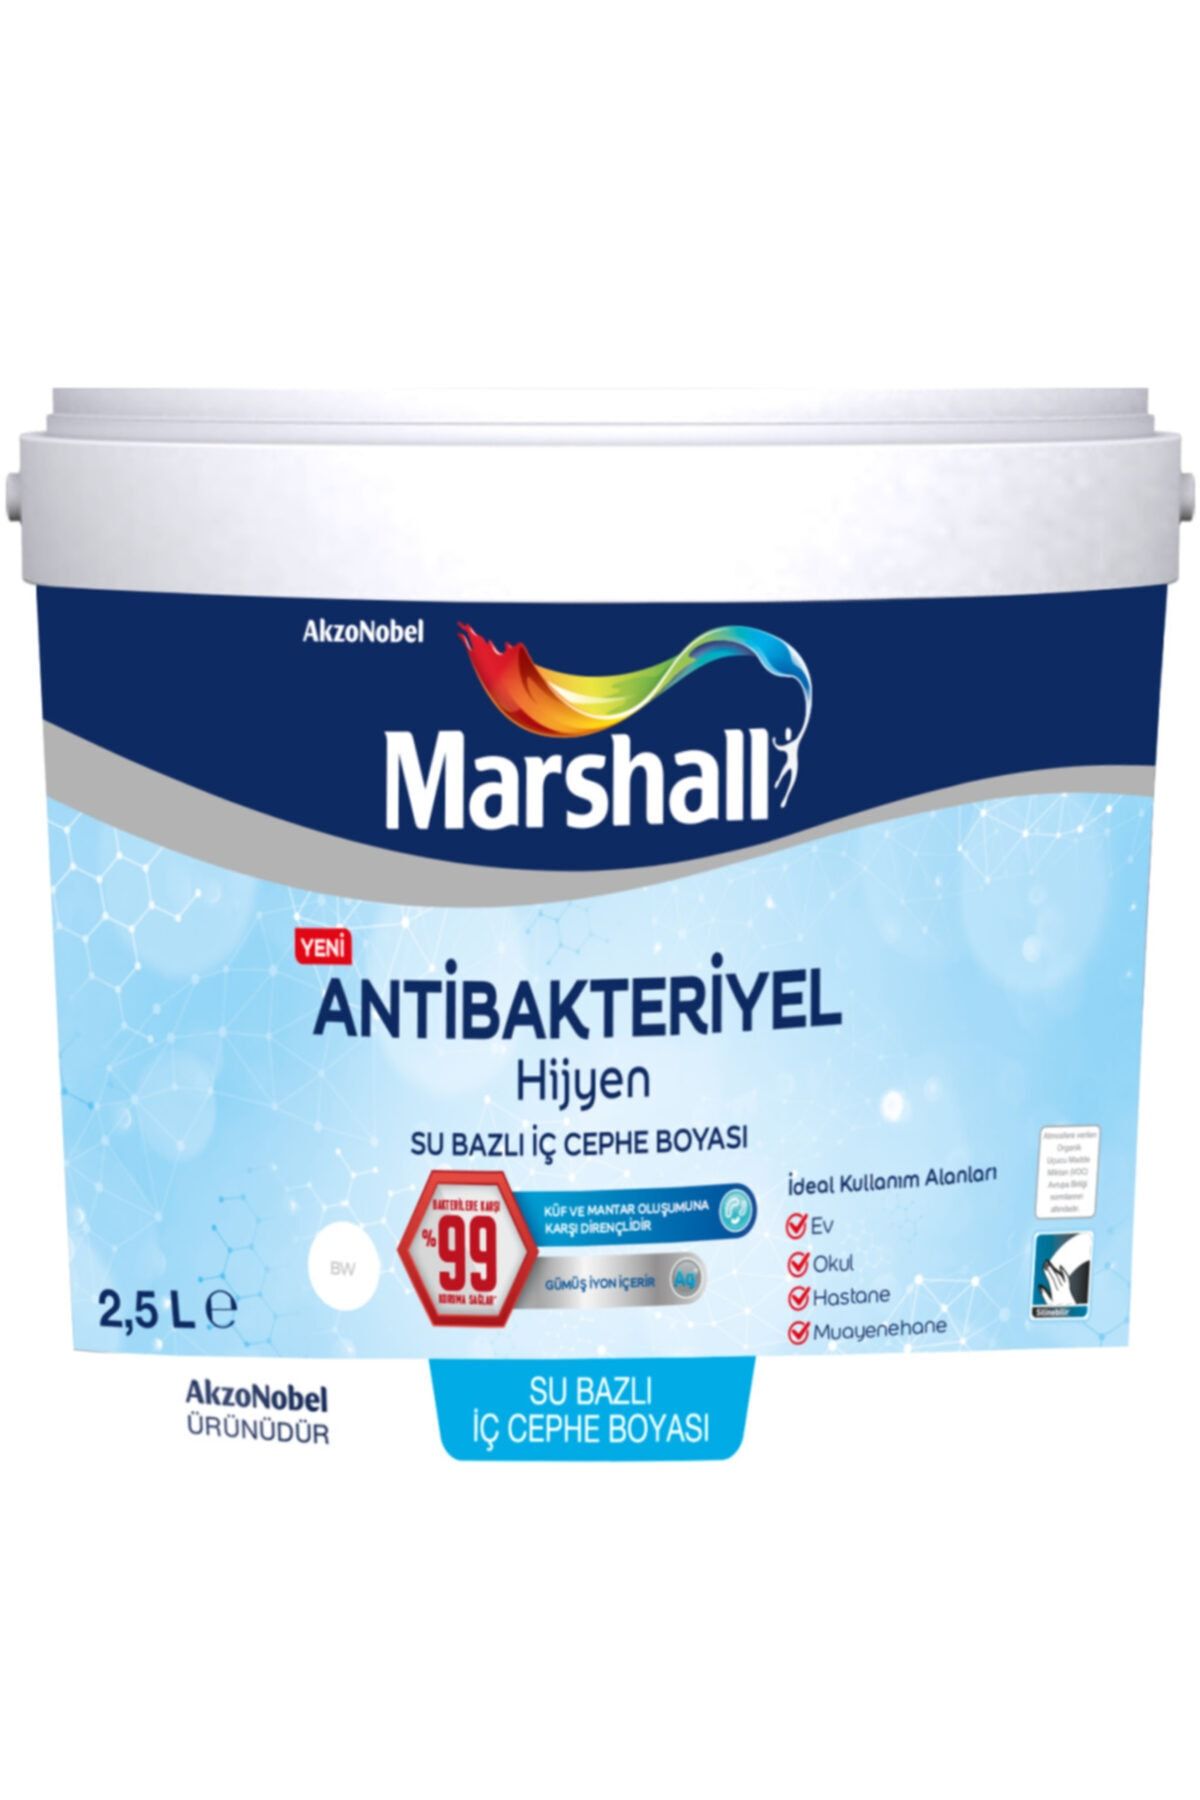 Marshall Antibakteriyel Hijyen Iç Cephe Duvar Boyası 2,5 Lt Mum Işığı